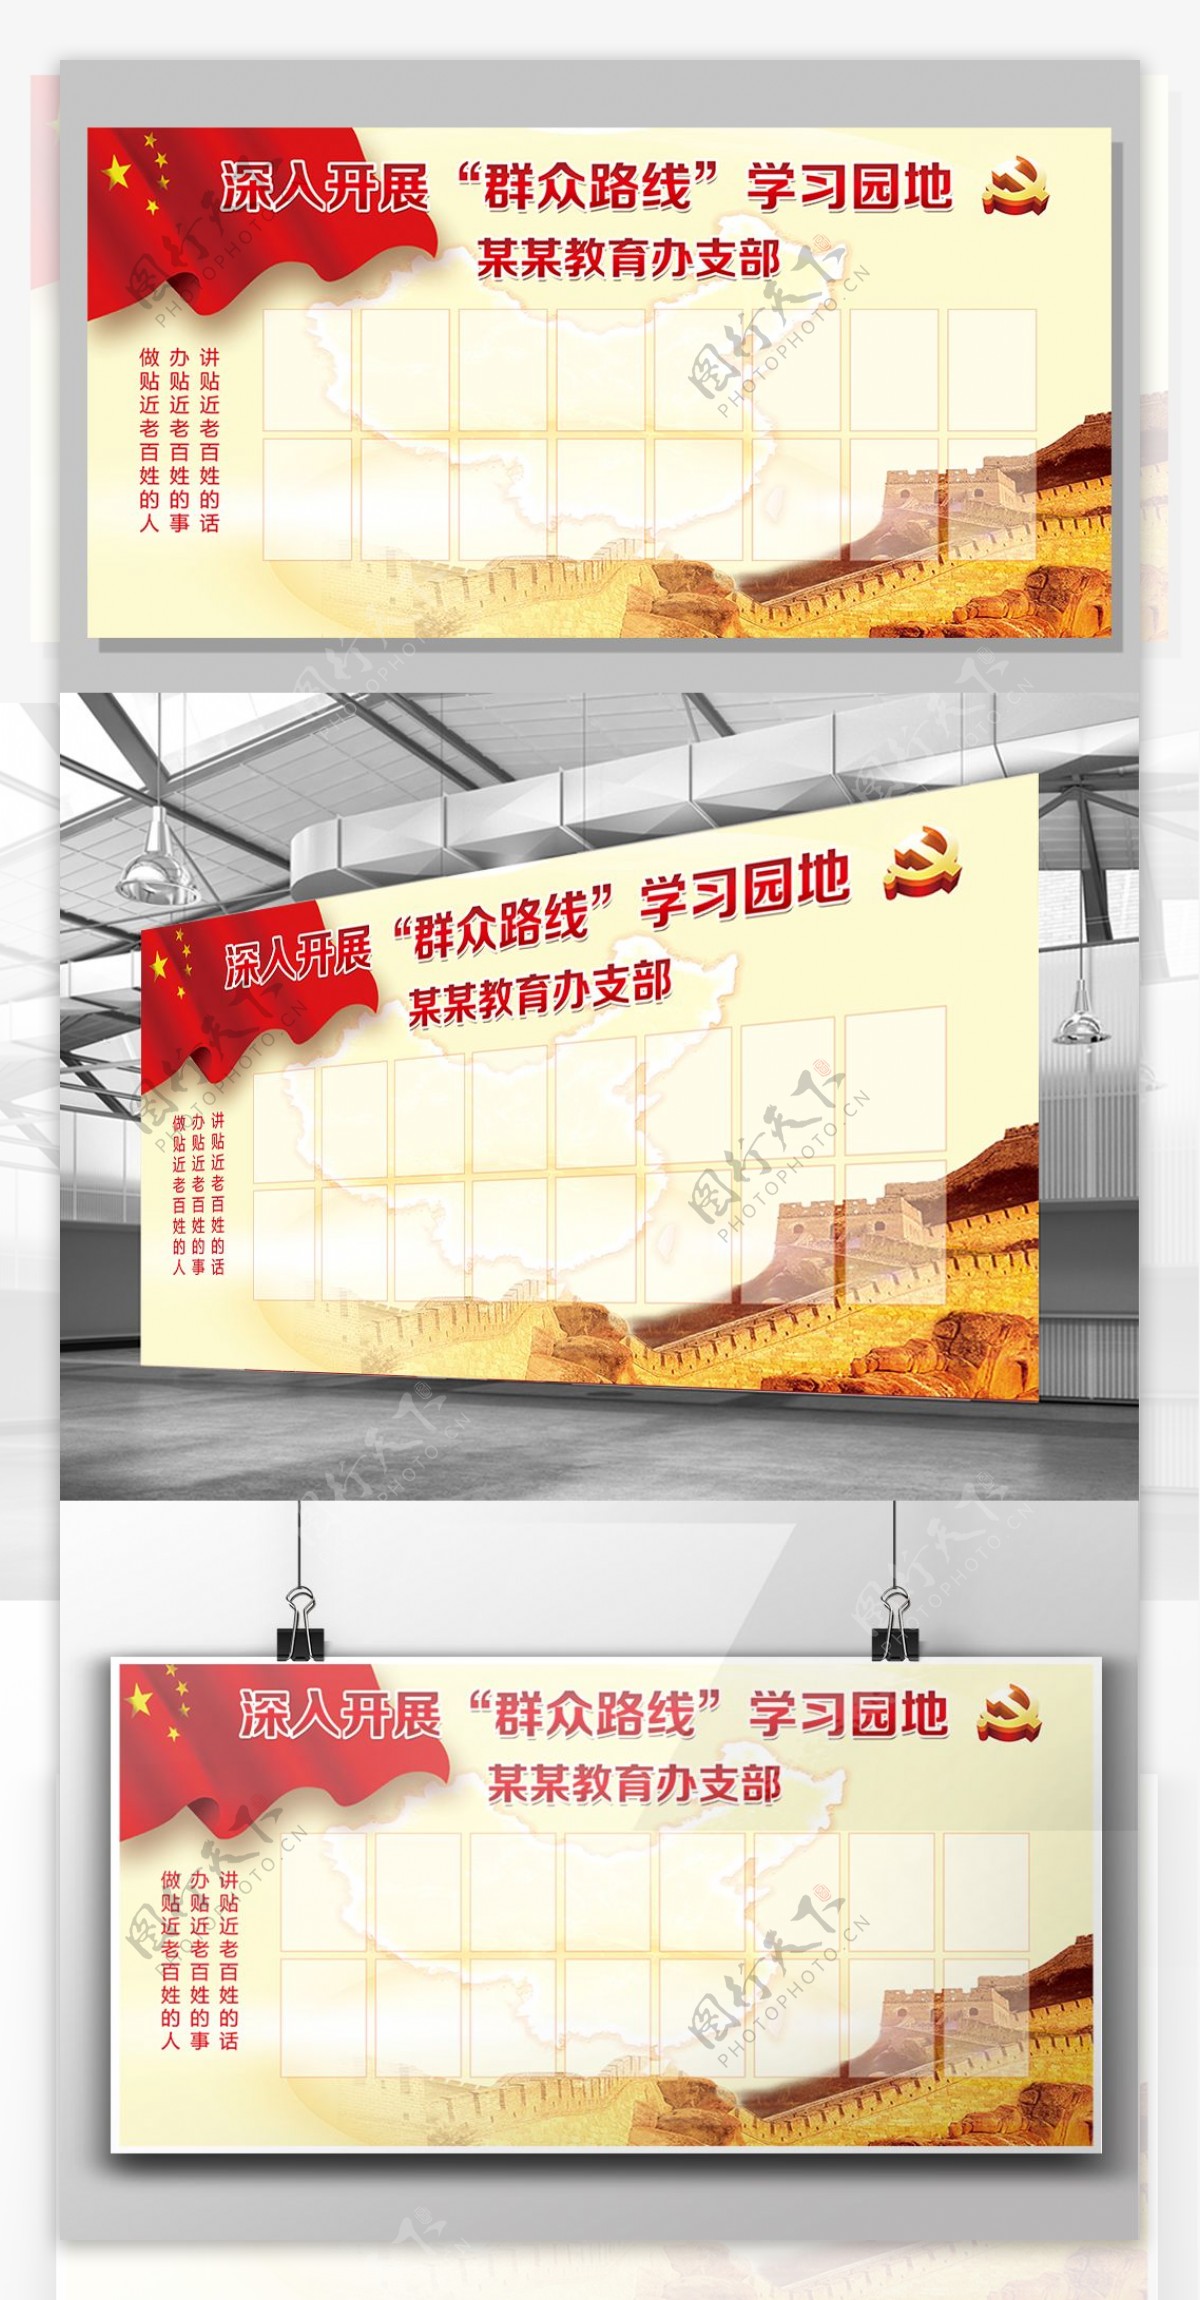 2017年红色大气学习园地党建宣传展板模版